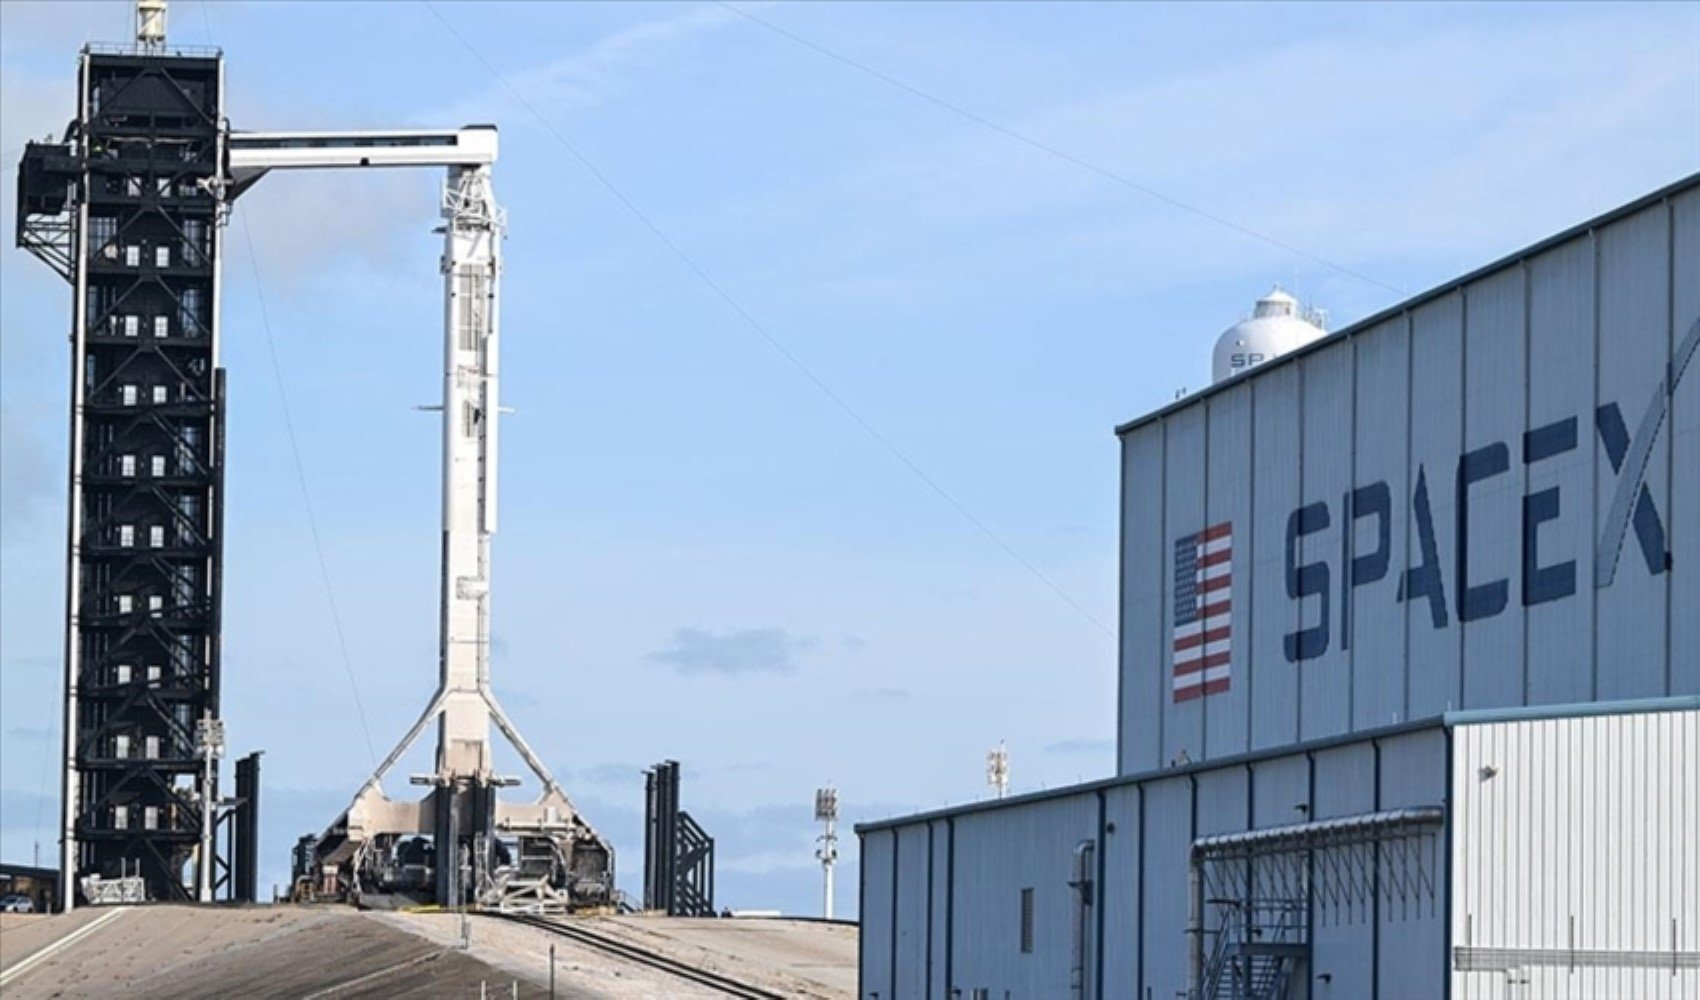 SpaceX casus uydular geliştiriyor olabilir: Gizli anlaşma iddiası